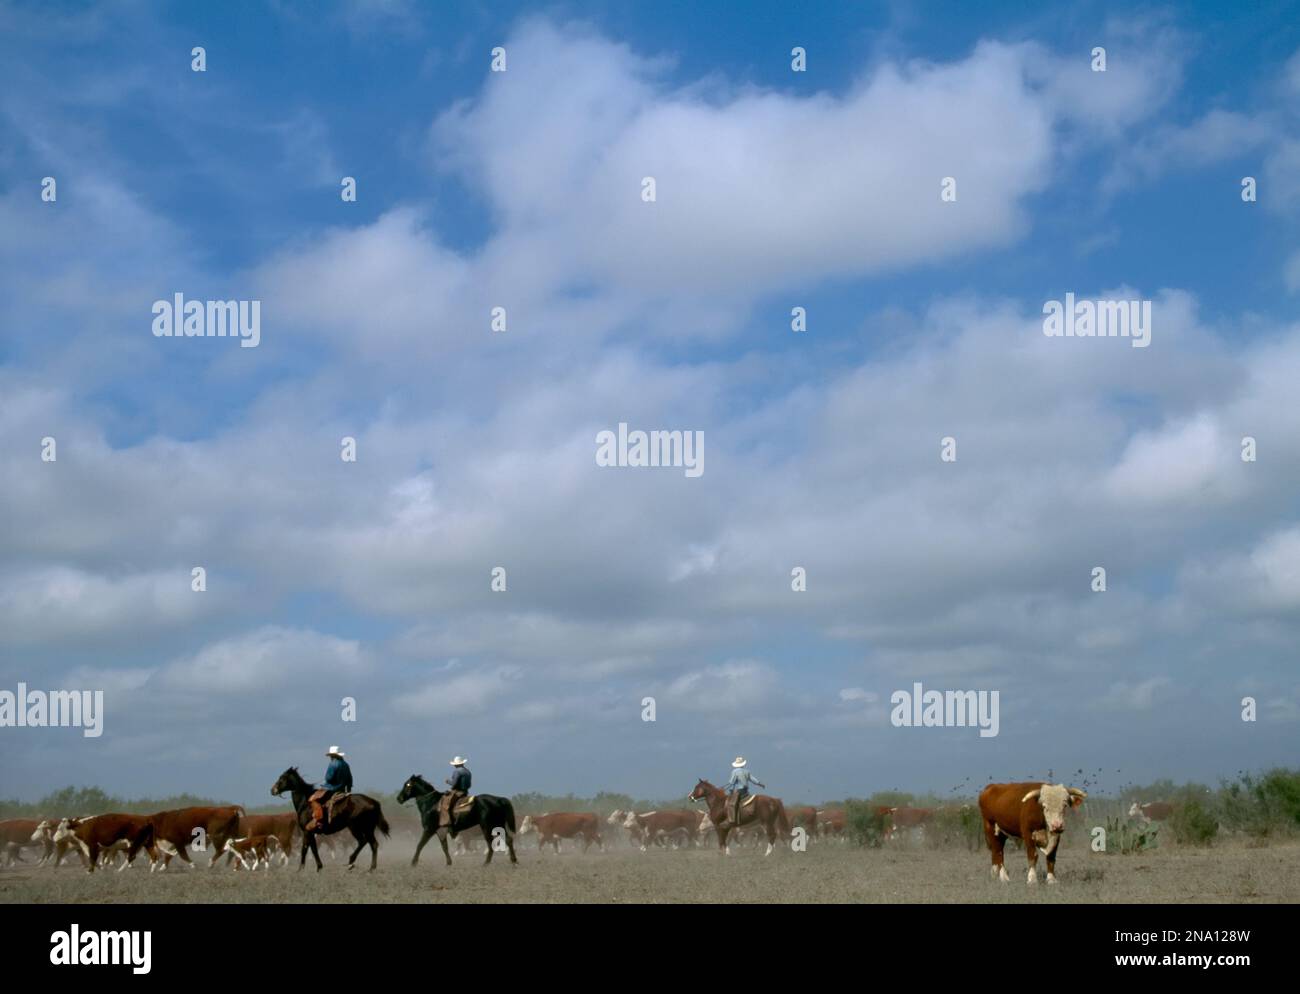 Unter einem großen Himmel halten Rinder auf der 130 000 Hektar großen Ranch in der Nähe von Encinal, Texas, USA; Texas, Vereinigte Staaten von Amerika Stockfoto